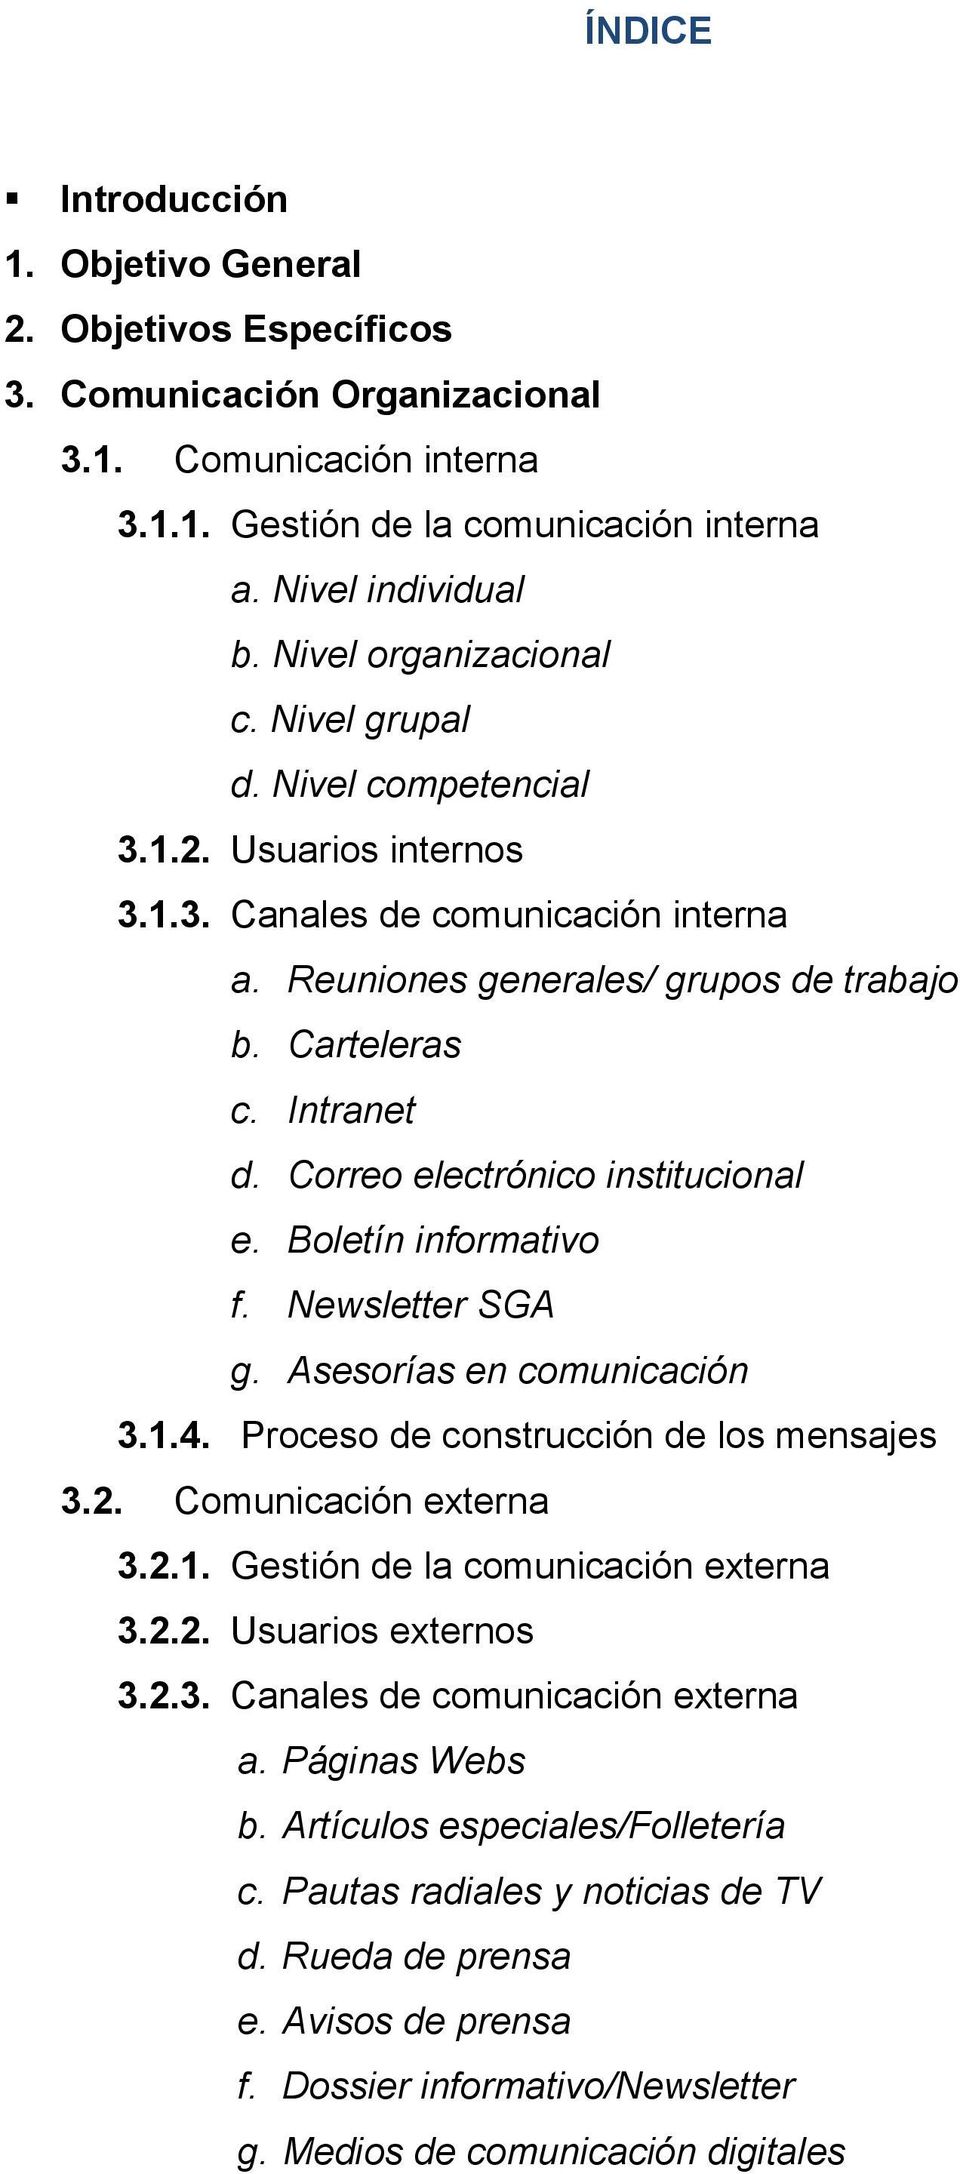 Correo electrónico institucional e. Boletín informativo f. Newsletter SGA g. Asesorías en comunicación 3.1.4. Proceso de construcción de los mensajes 3.2. Comunicación externa 3.2.1. Gestión de la comunicación externa 3.